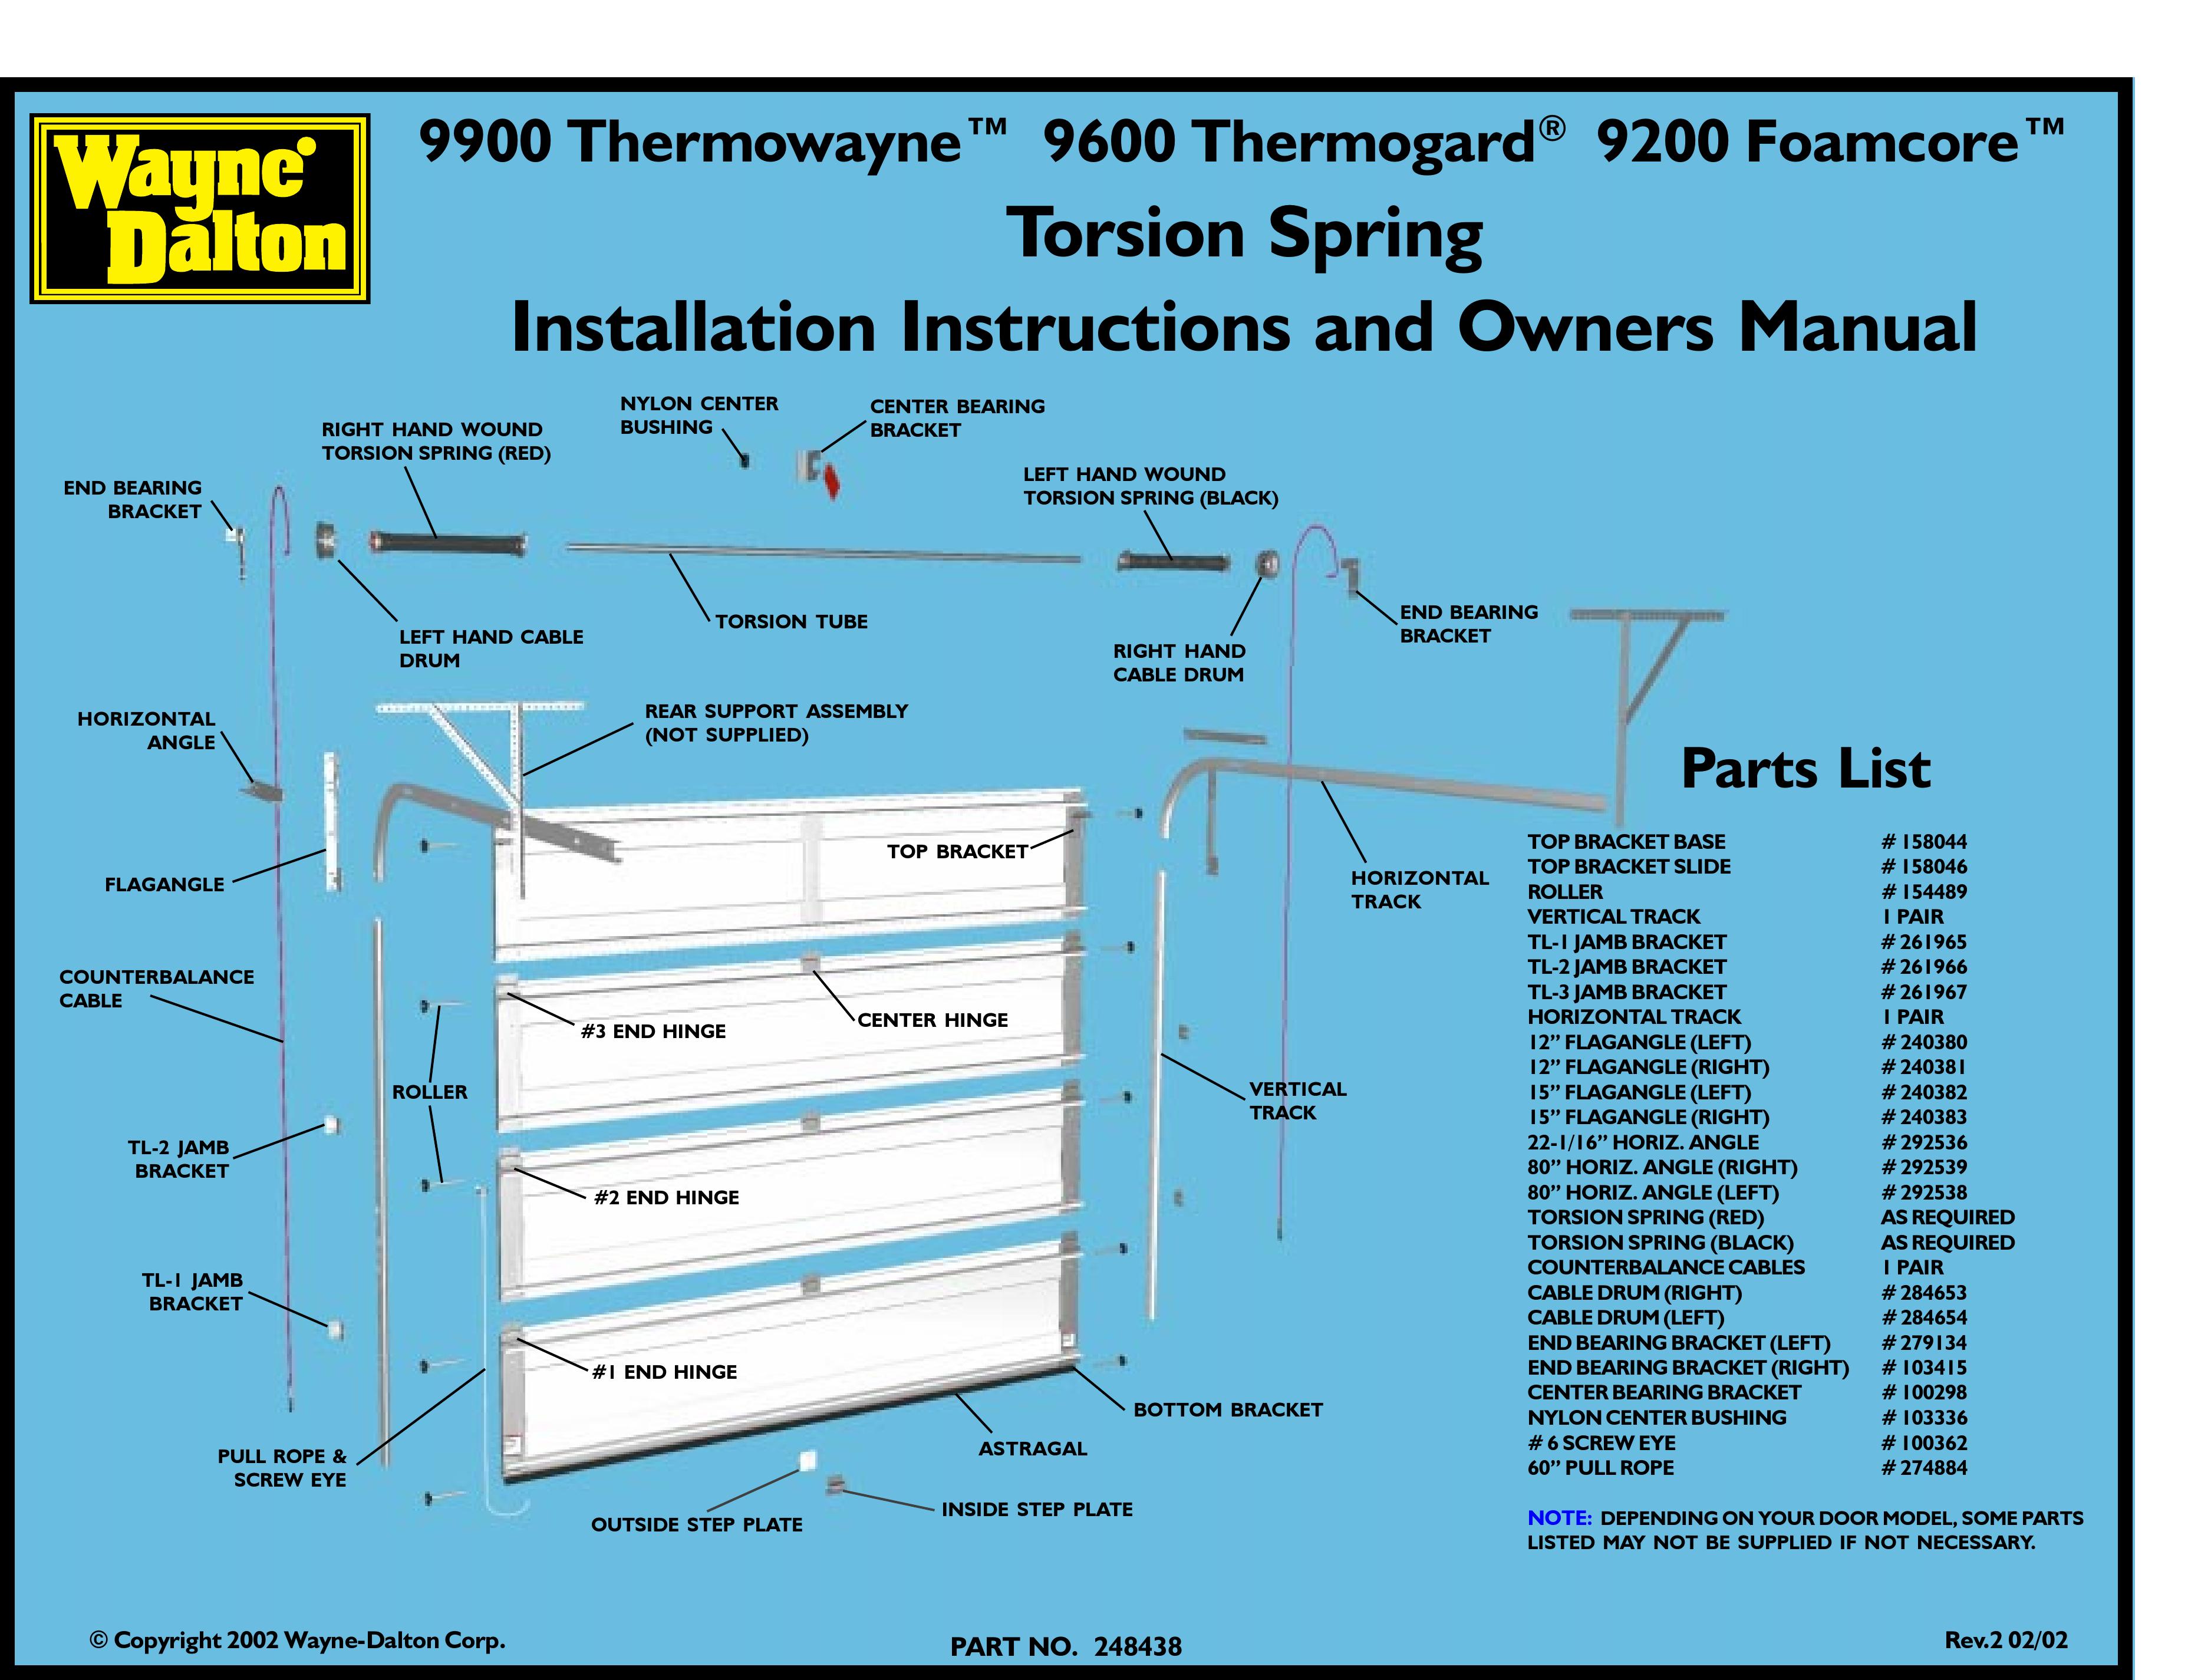 Wayne-Dalton 9900 Thermowayne Thermometer User Manual